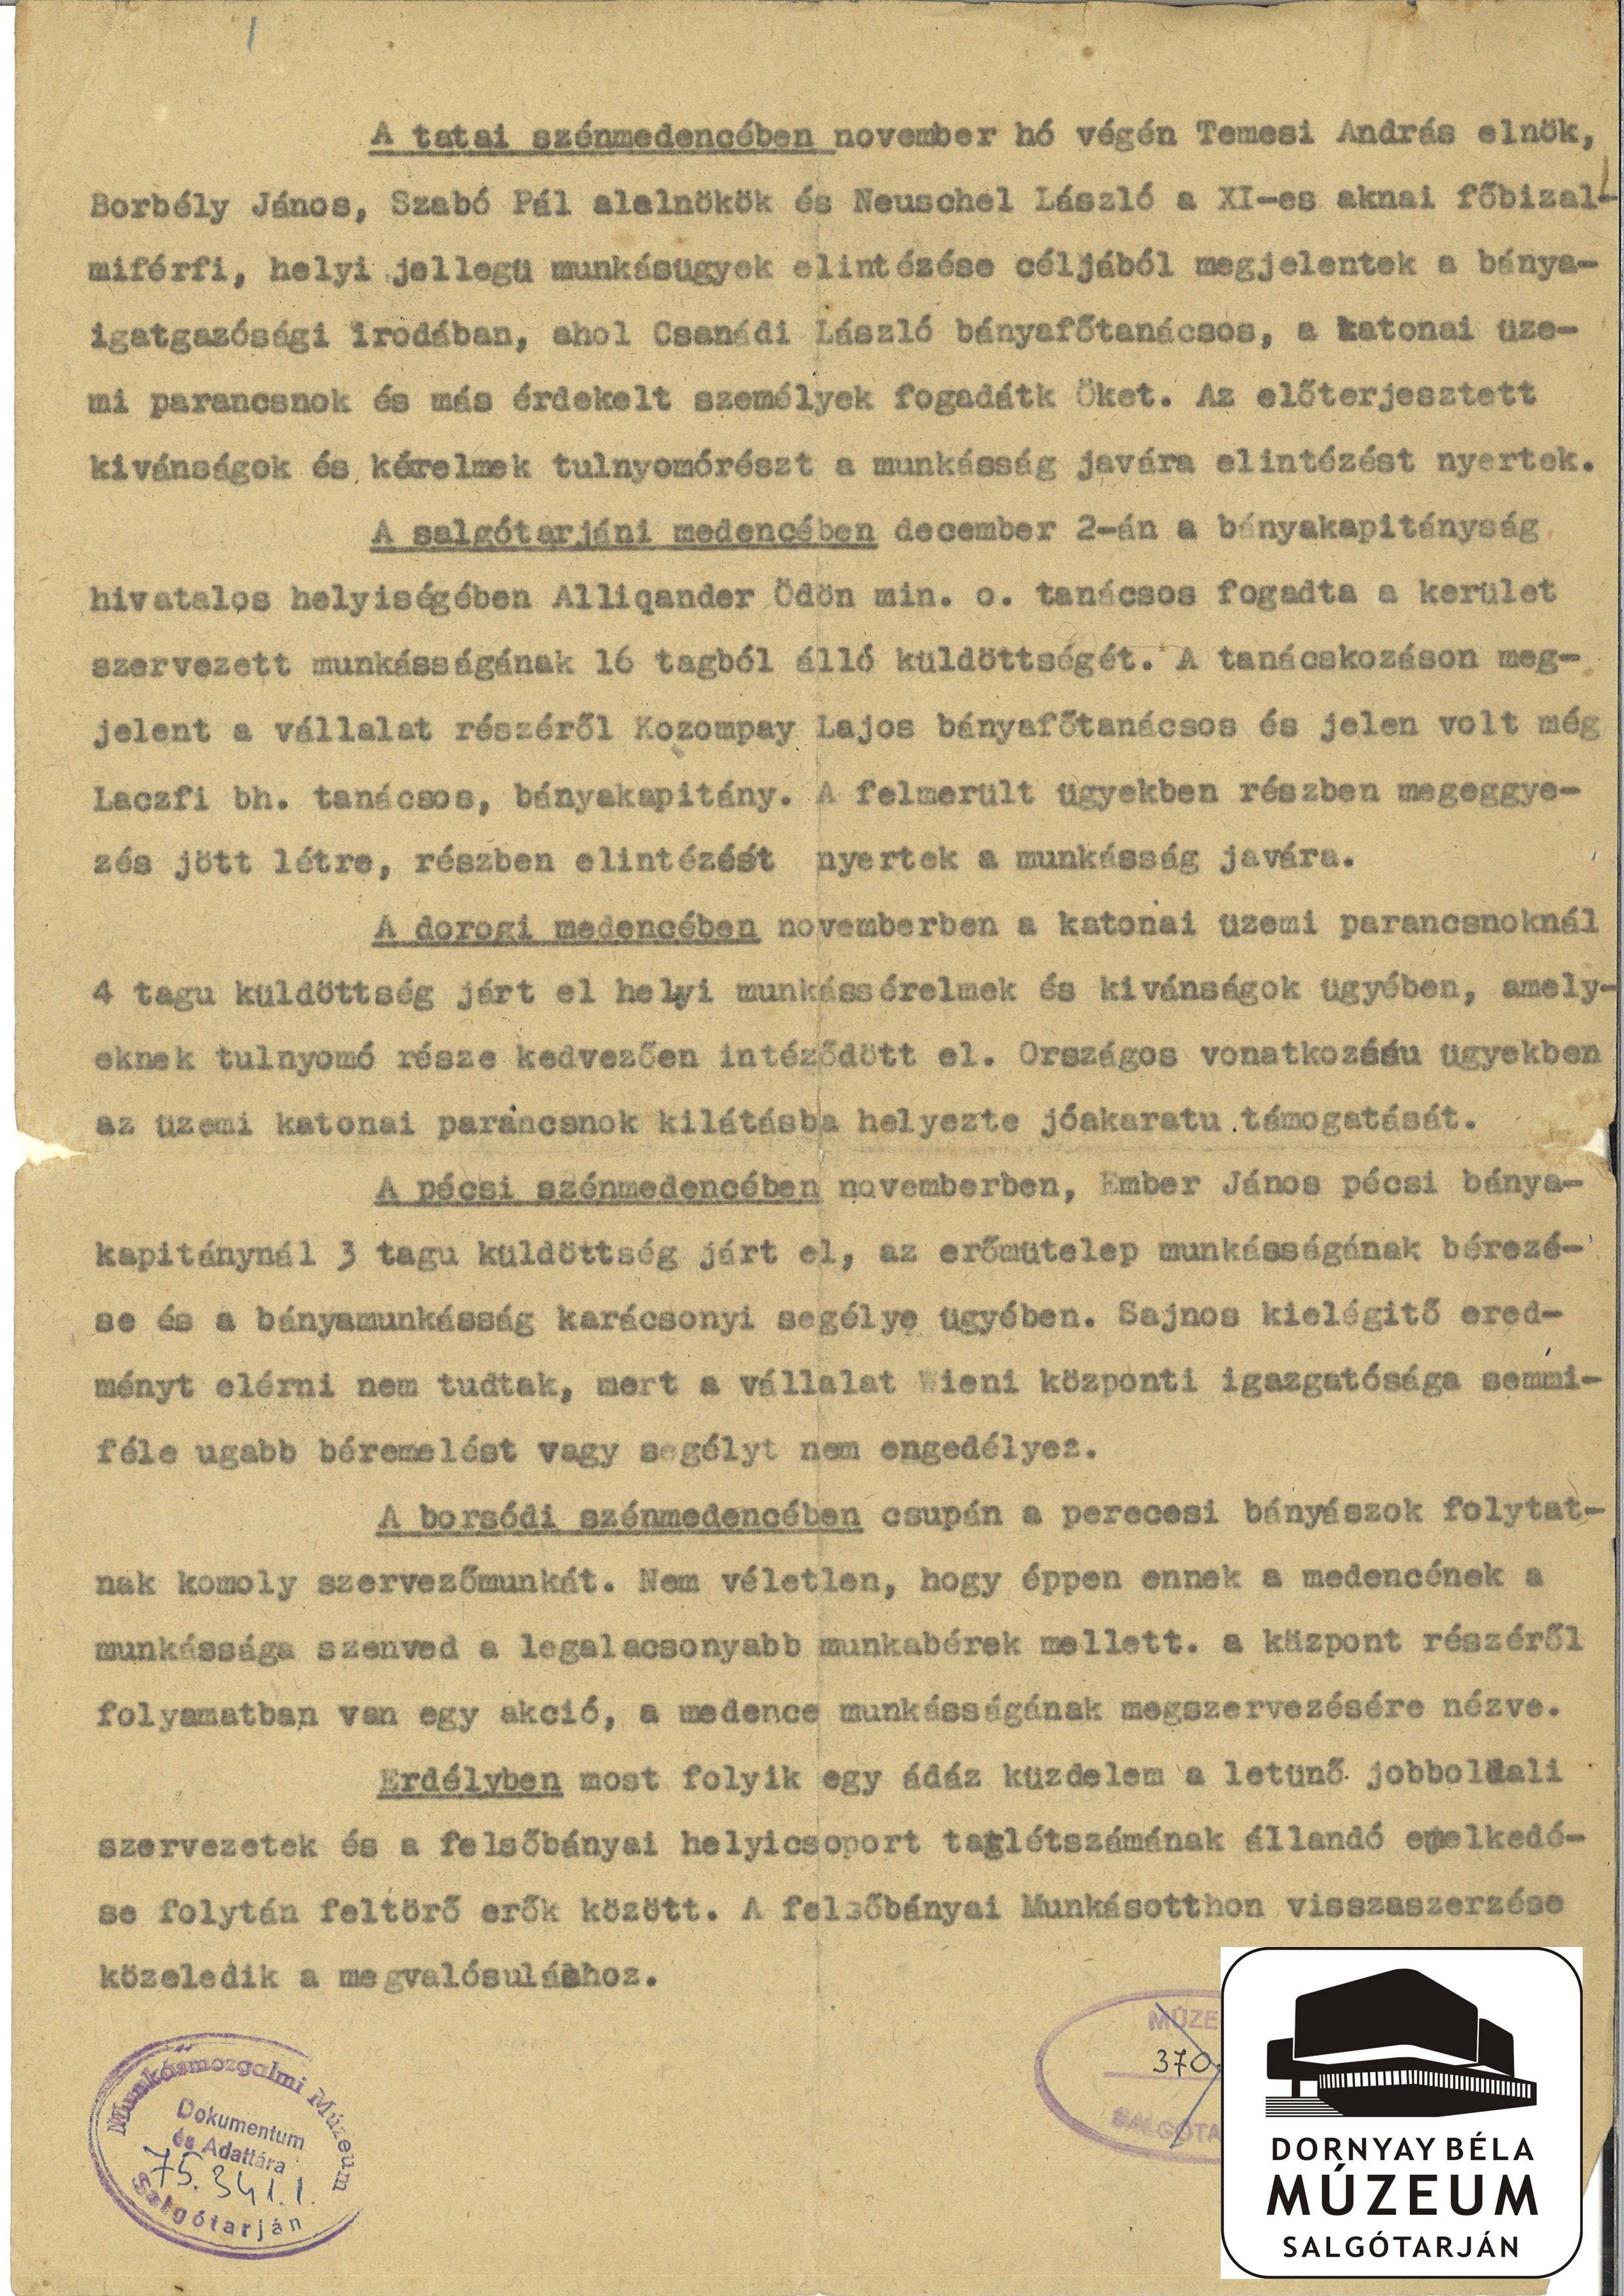 Bányász szakszervezet előtt álló feladatok (központi levél) (Dornyay Béla Múzeum, Salgótarján CC BY-NC-SA)